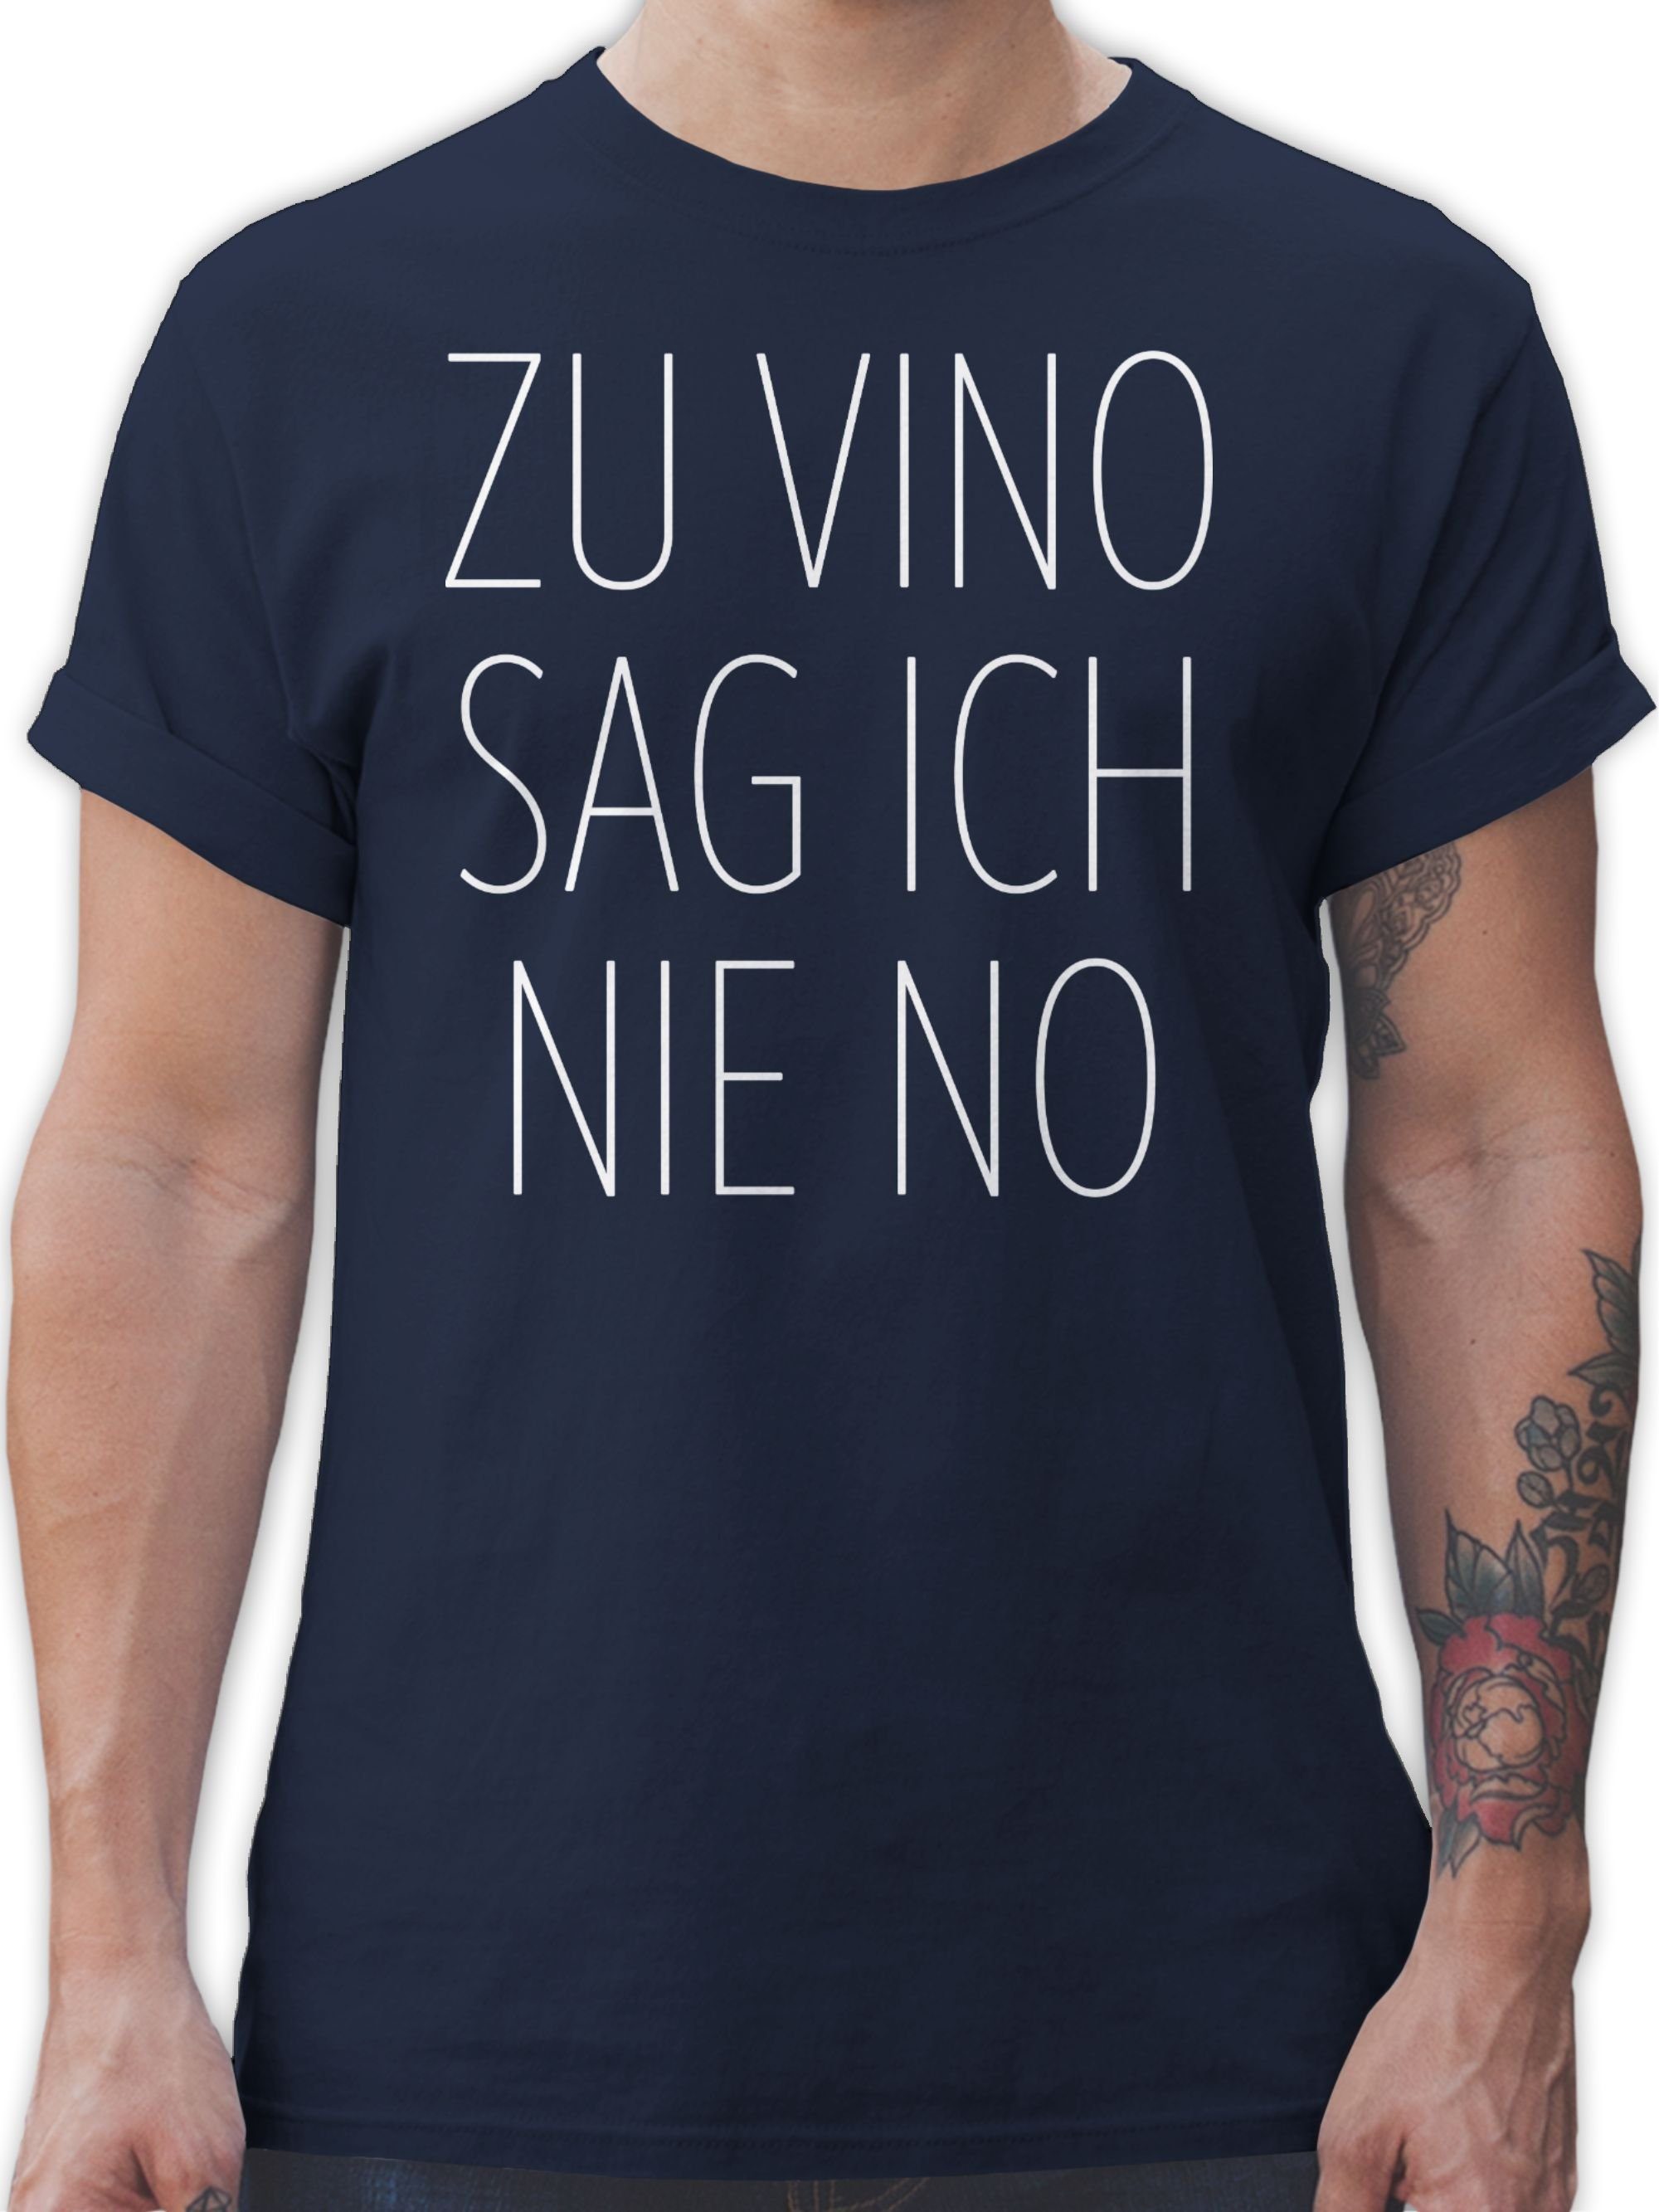 Shirtracer T-Shirt Zu Vino sag ich nie No weiß Sprüche Statement mit Spruch 03 Navy Blau